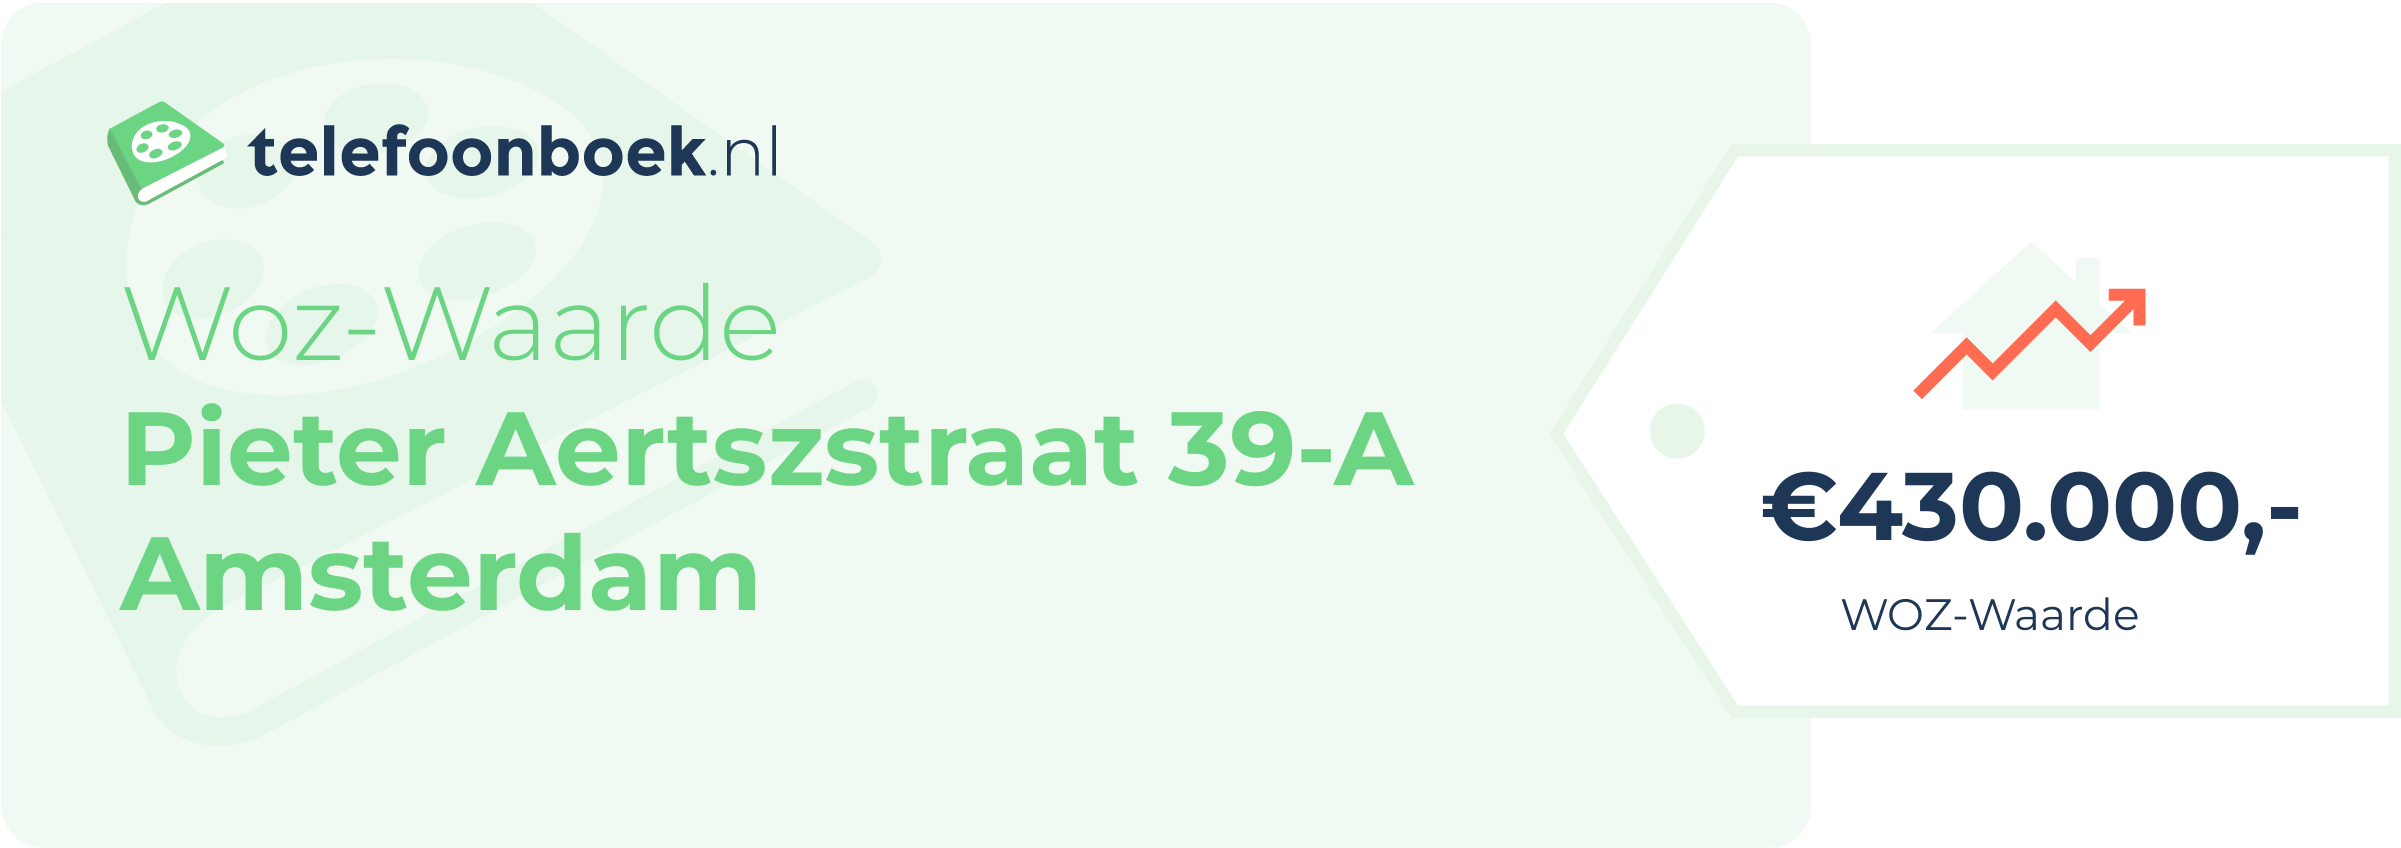 WOZ-waarde Pieter Aertszstraat 39-A Amsterdam